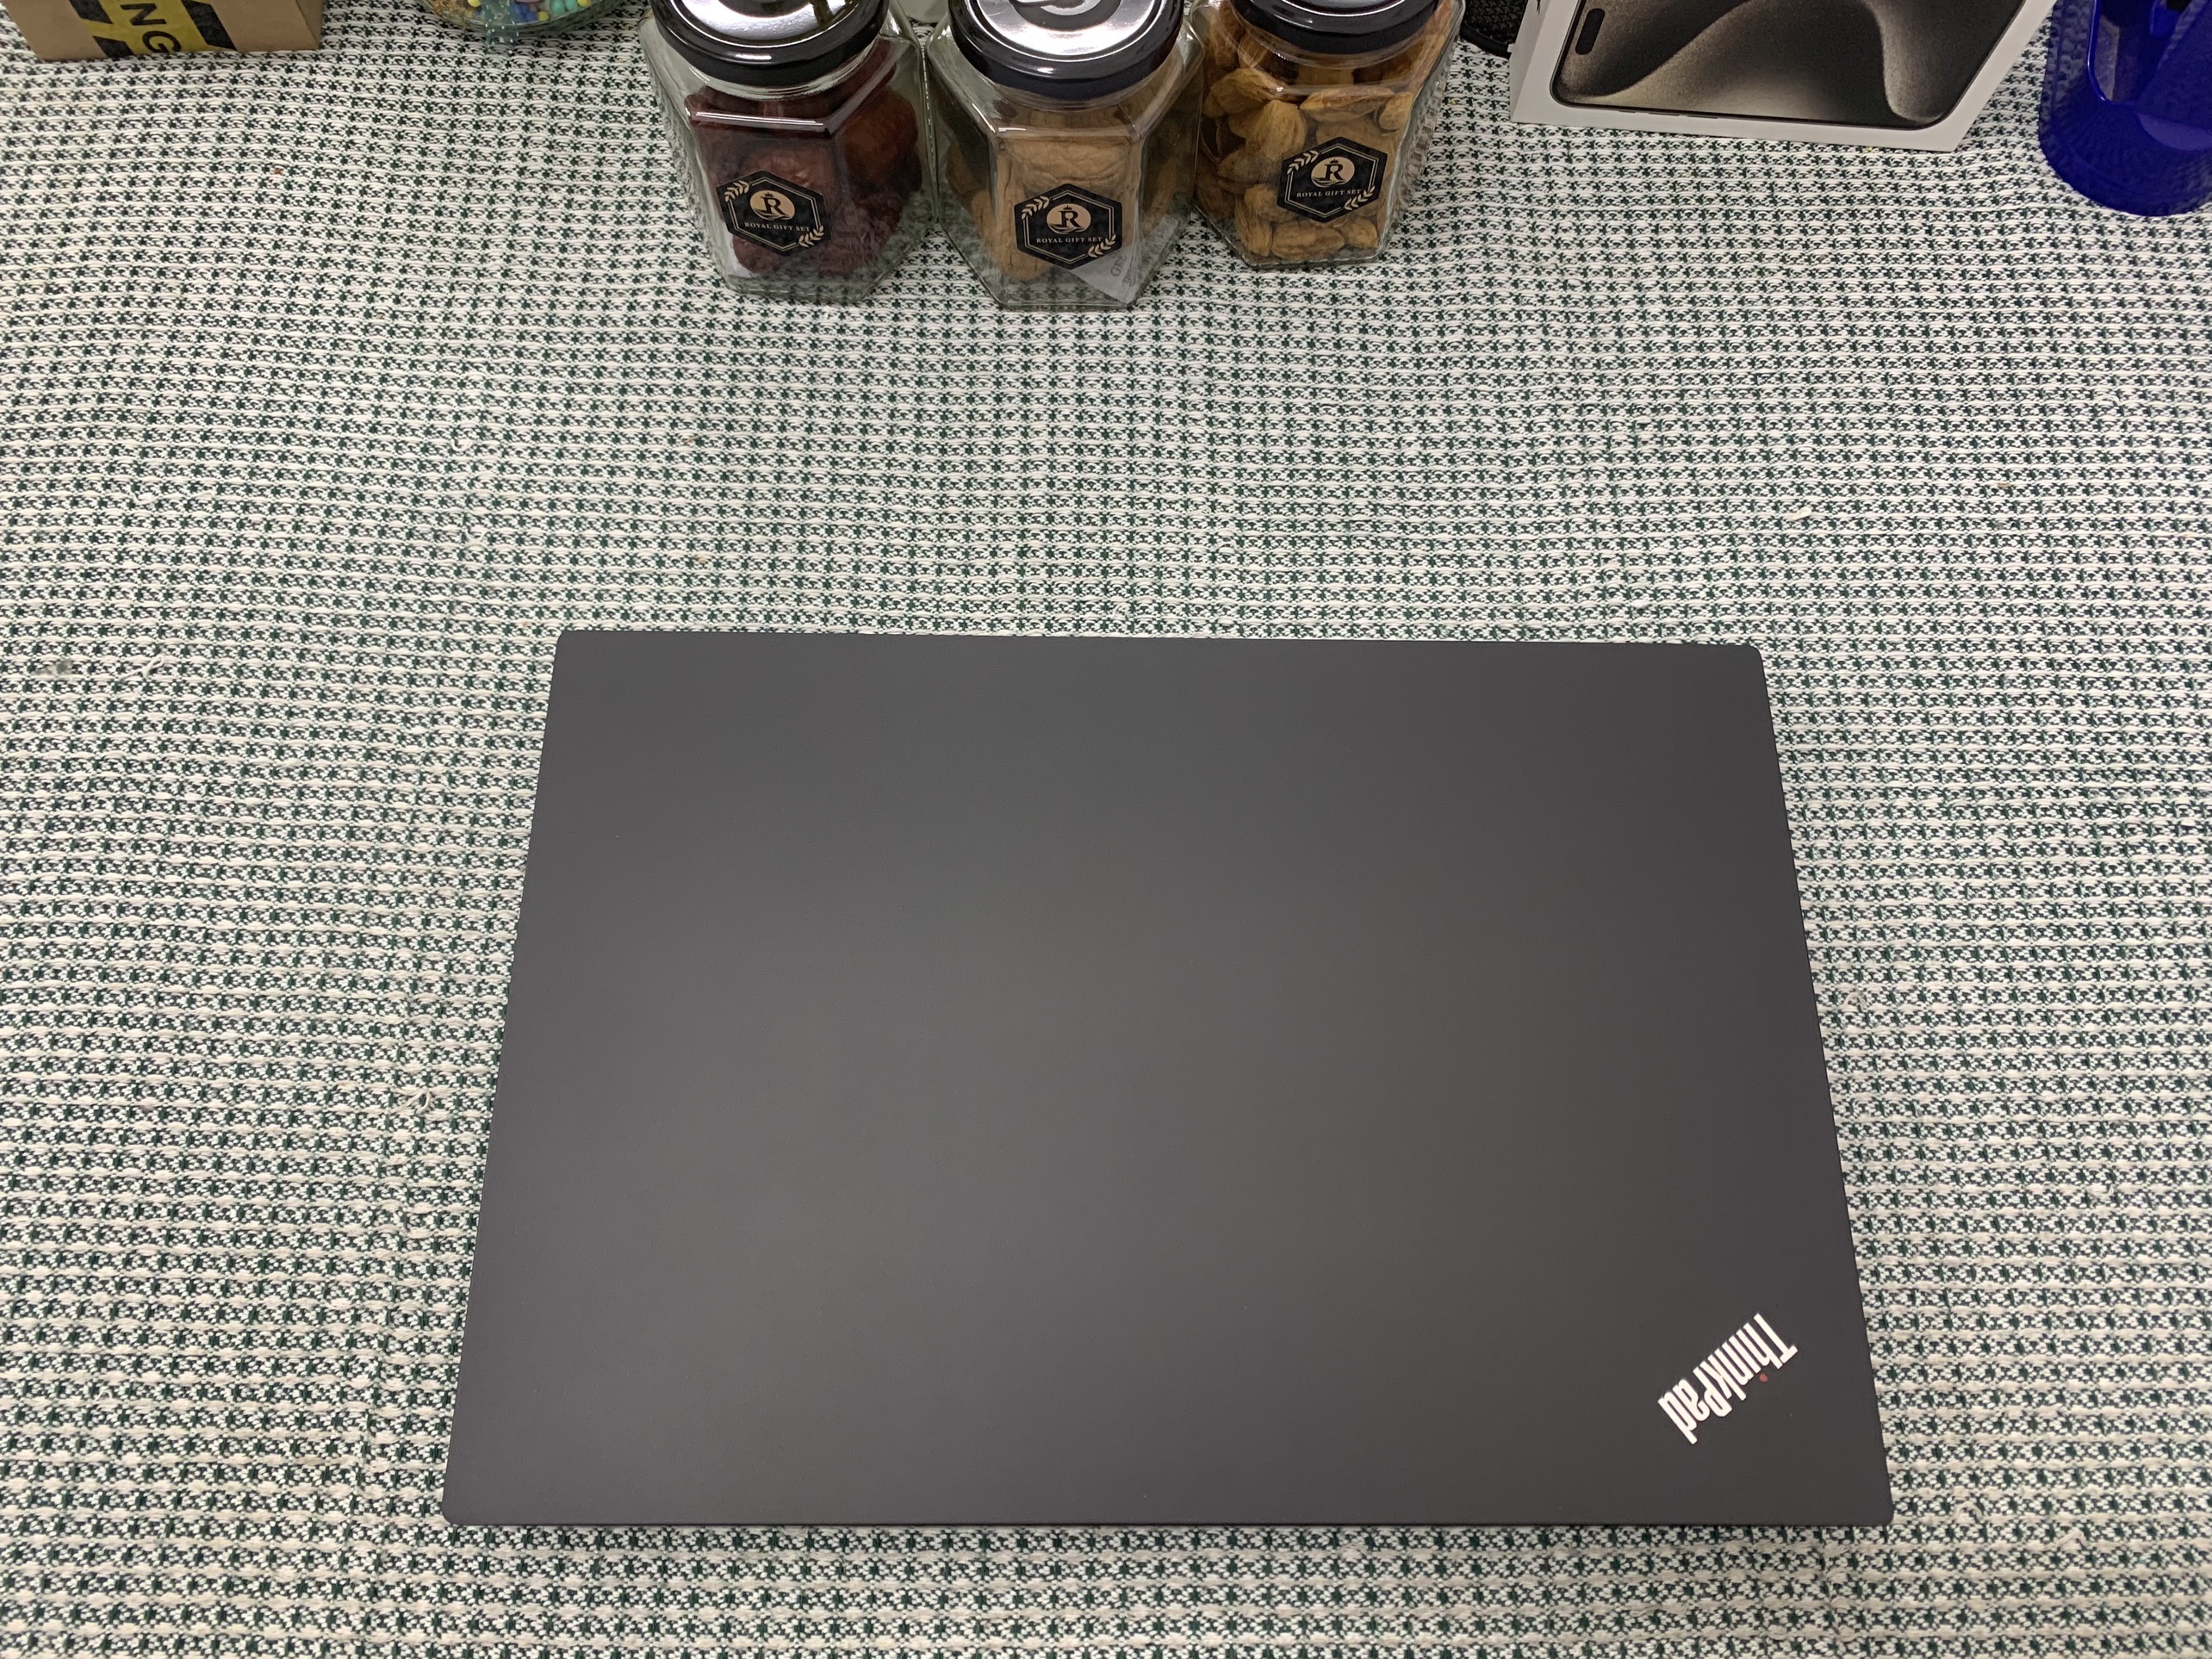 ThinkPad E585